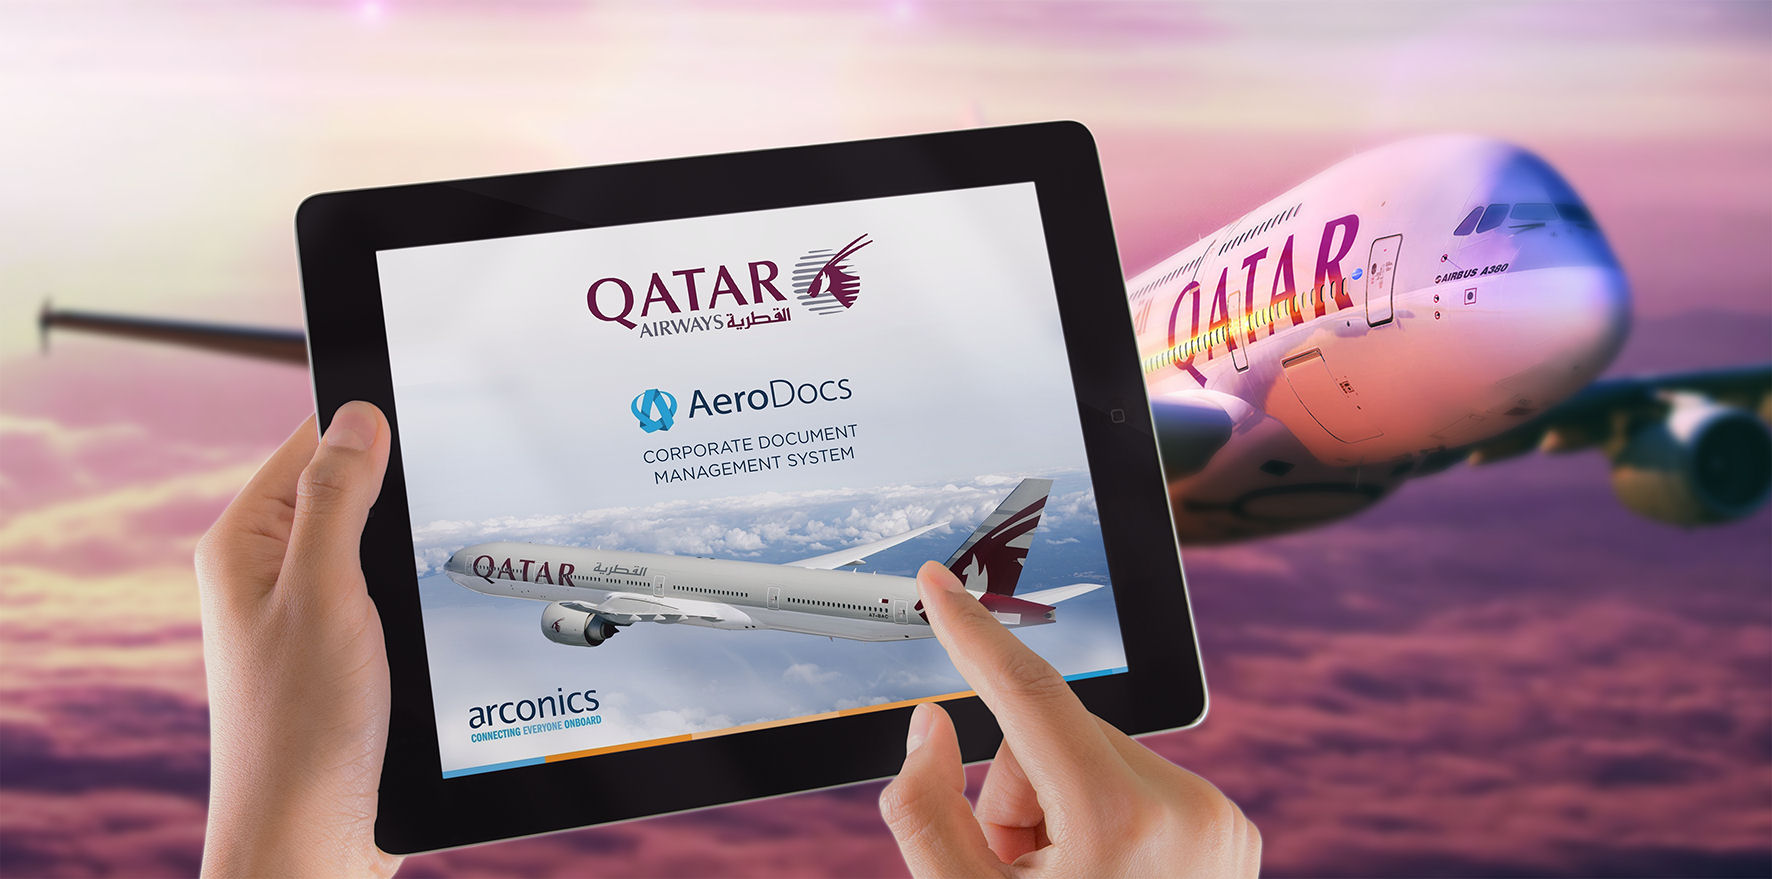 
Стратегия Qatar Airways окупается: прибыль авиакомпании в 2016 году составила US$439 млн